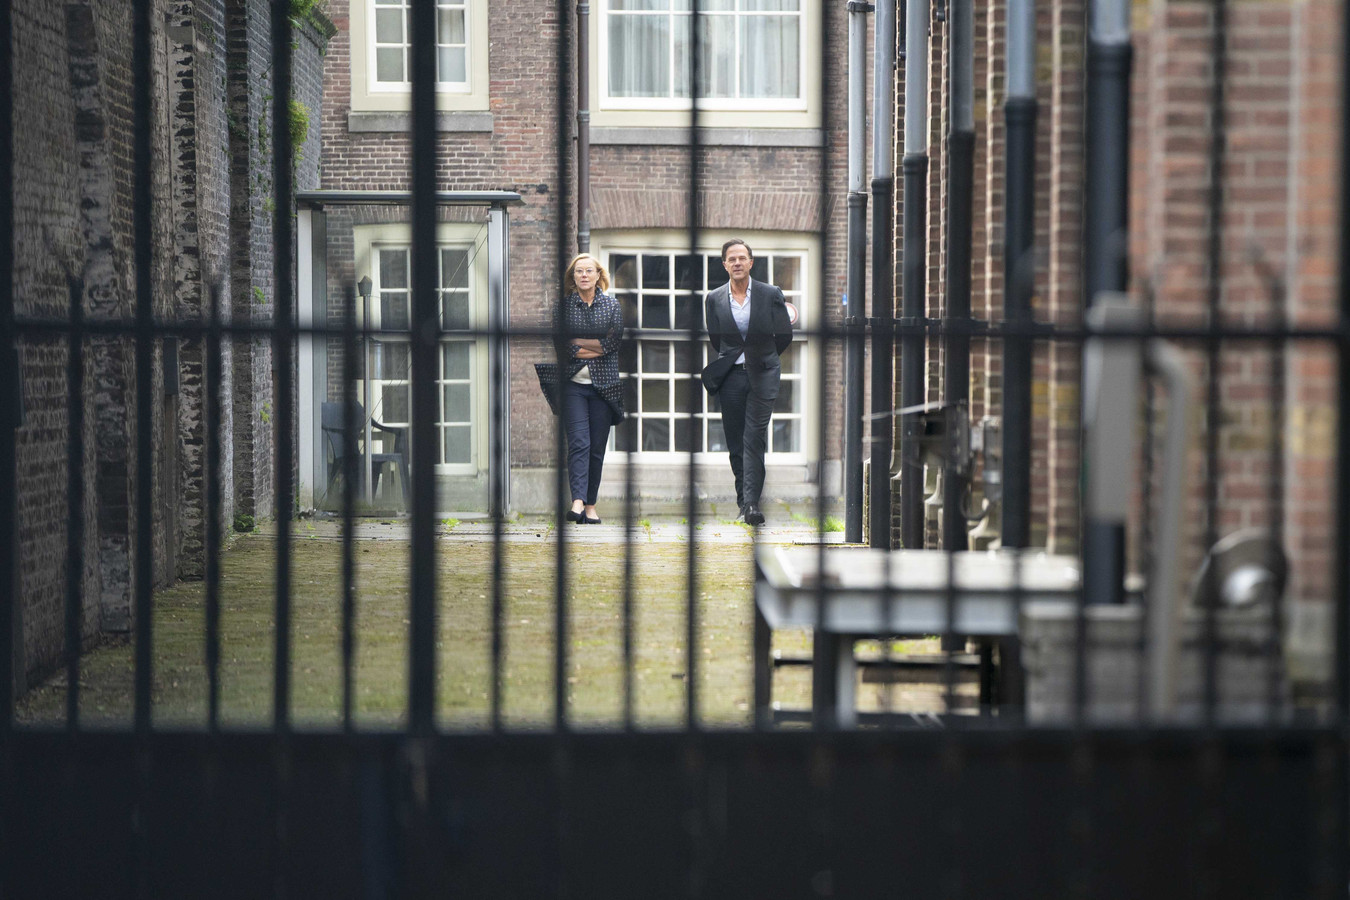 Demissionair premier Mark Rutte in gesprek met Sigrid Kaag in de tuin van het logement tijdens gesprekken over de kabinetsformatie.